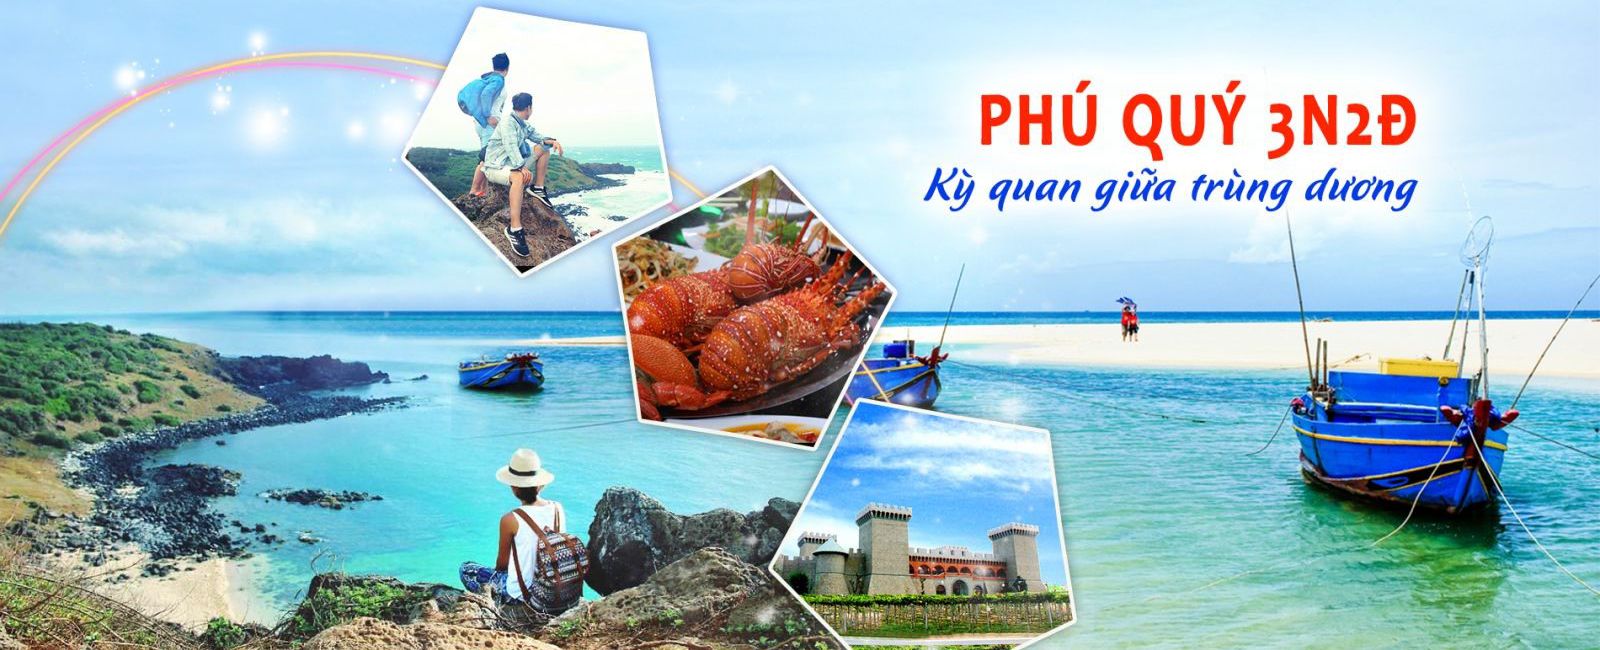 Tour Phu Quy